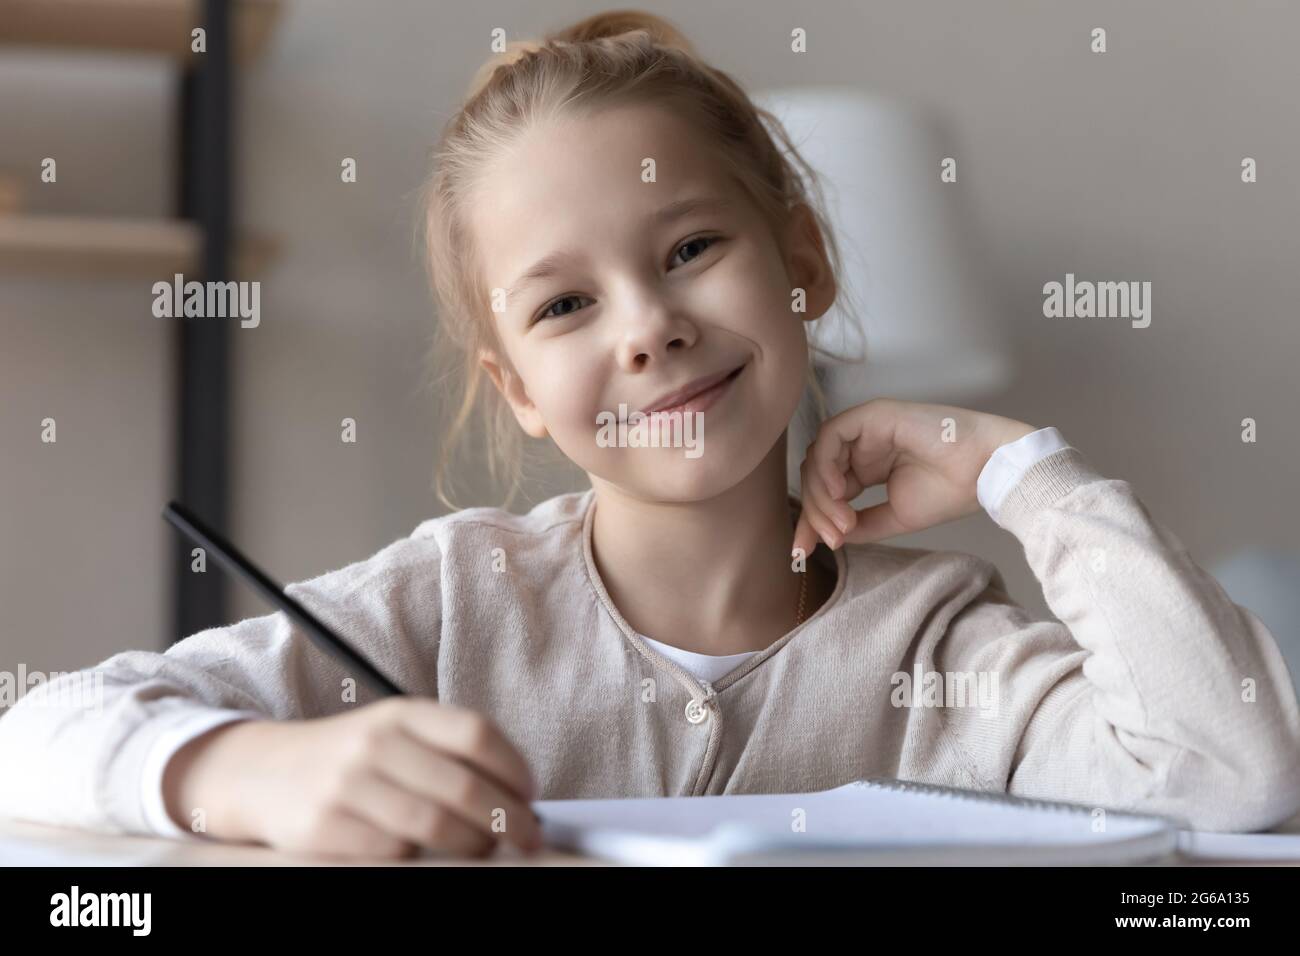 Retrato de la cabeza sonriente niña estudiante de edad de la escuela primaria en el escritorio Foto de stock